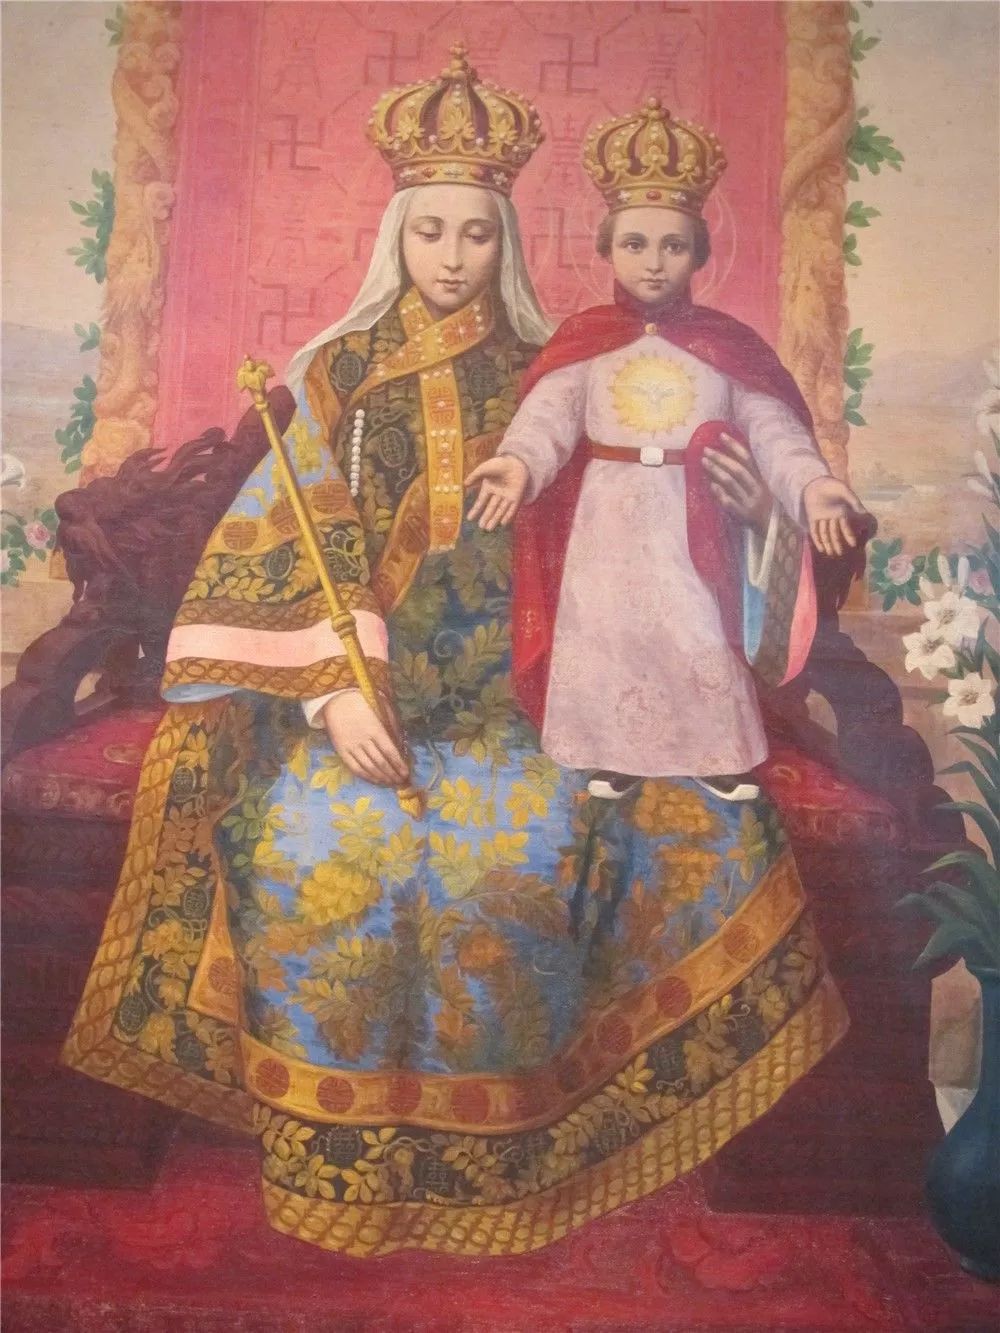 任懿芳画耶稣和孩子们图 二十世纪 绢本设色 中华圣母画像 1924年 布